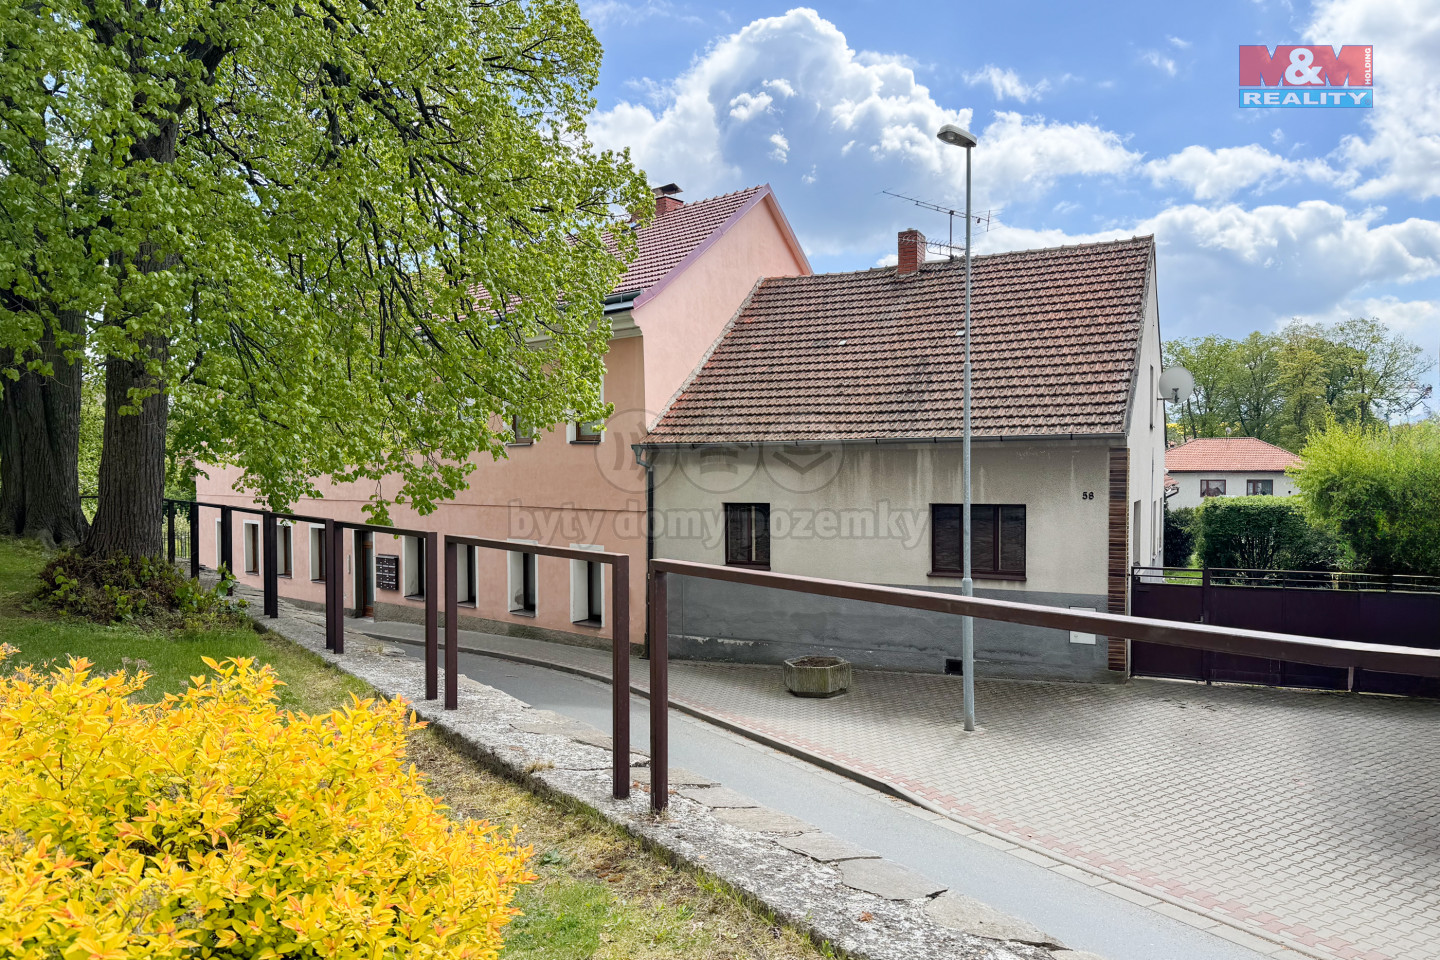 854223 - Rodinný dům, 84 m², Uhlířské Janovice, ul. Havlíčkova